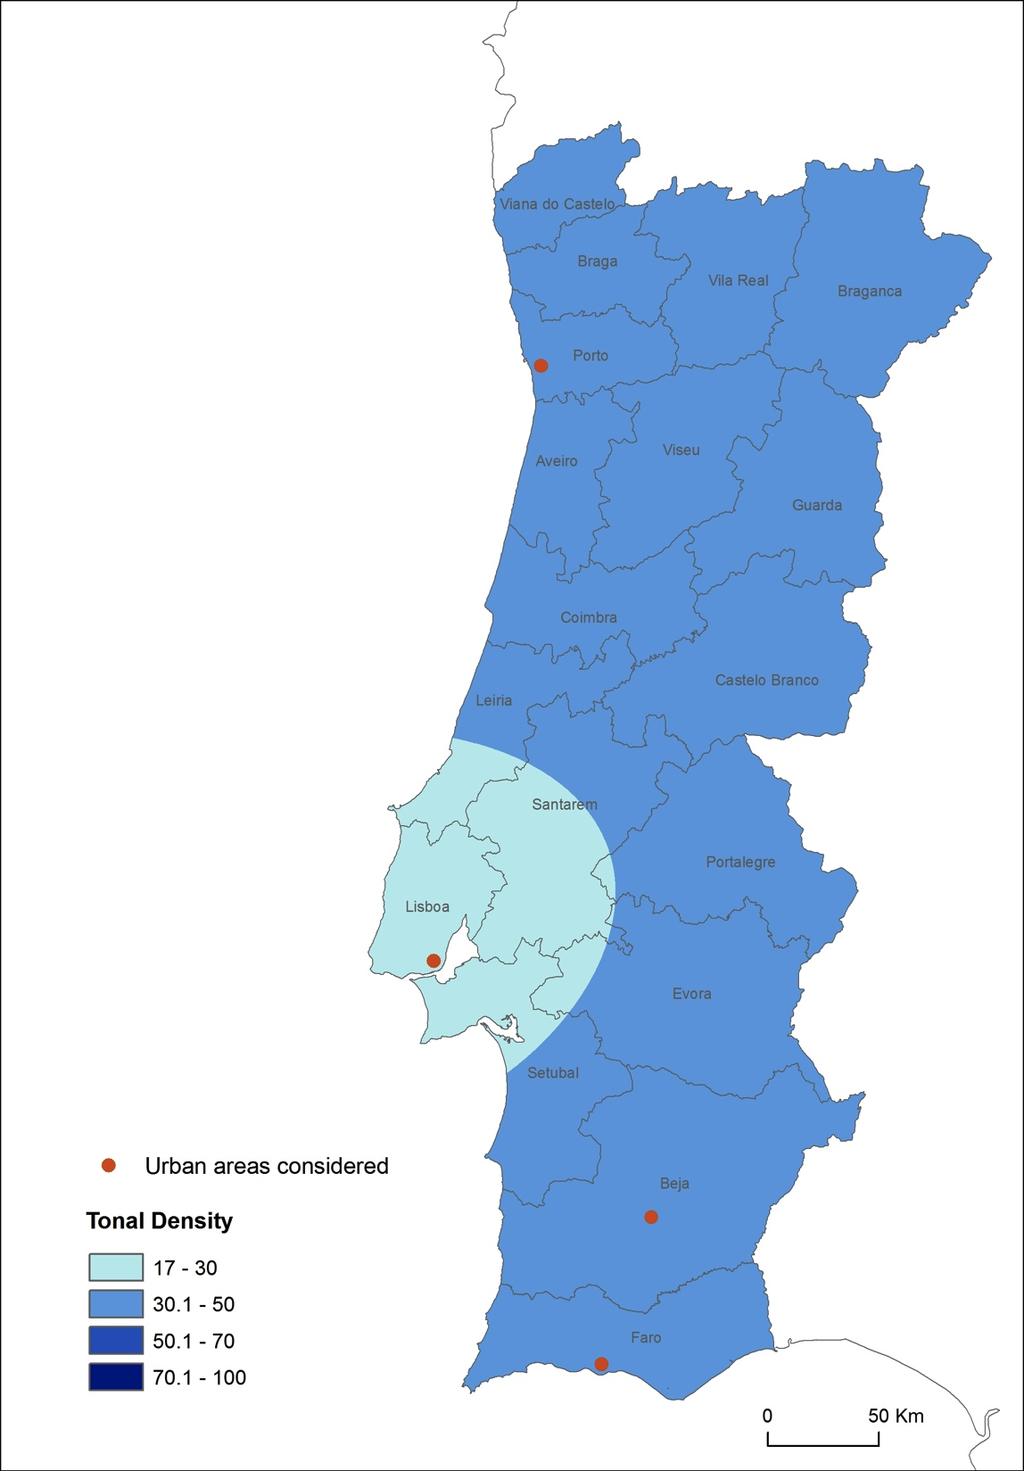 - Paragoge: fronteira direita do IP - pl: fronteira esquerda do úlxmo PhP do IP Densidade tonal no PE (4 regiões urbanas pontos vermelhos). Dados para o Porto e SEP de Frota et al.